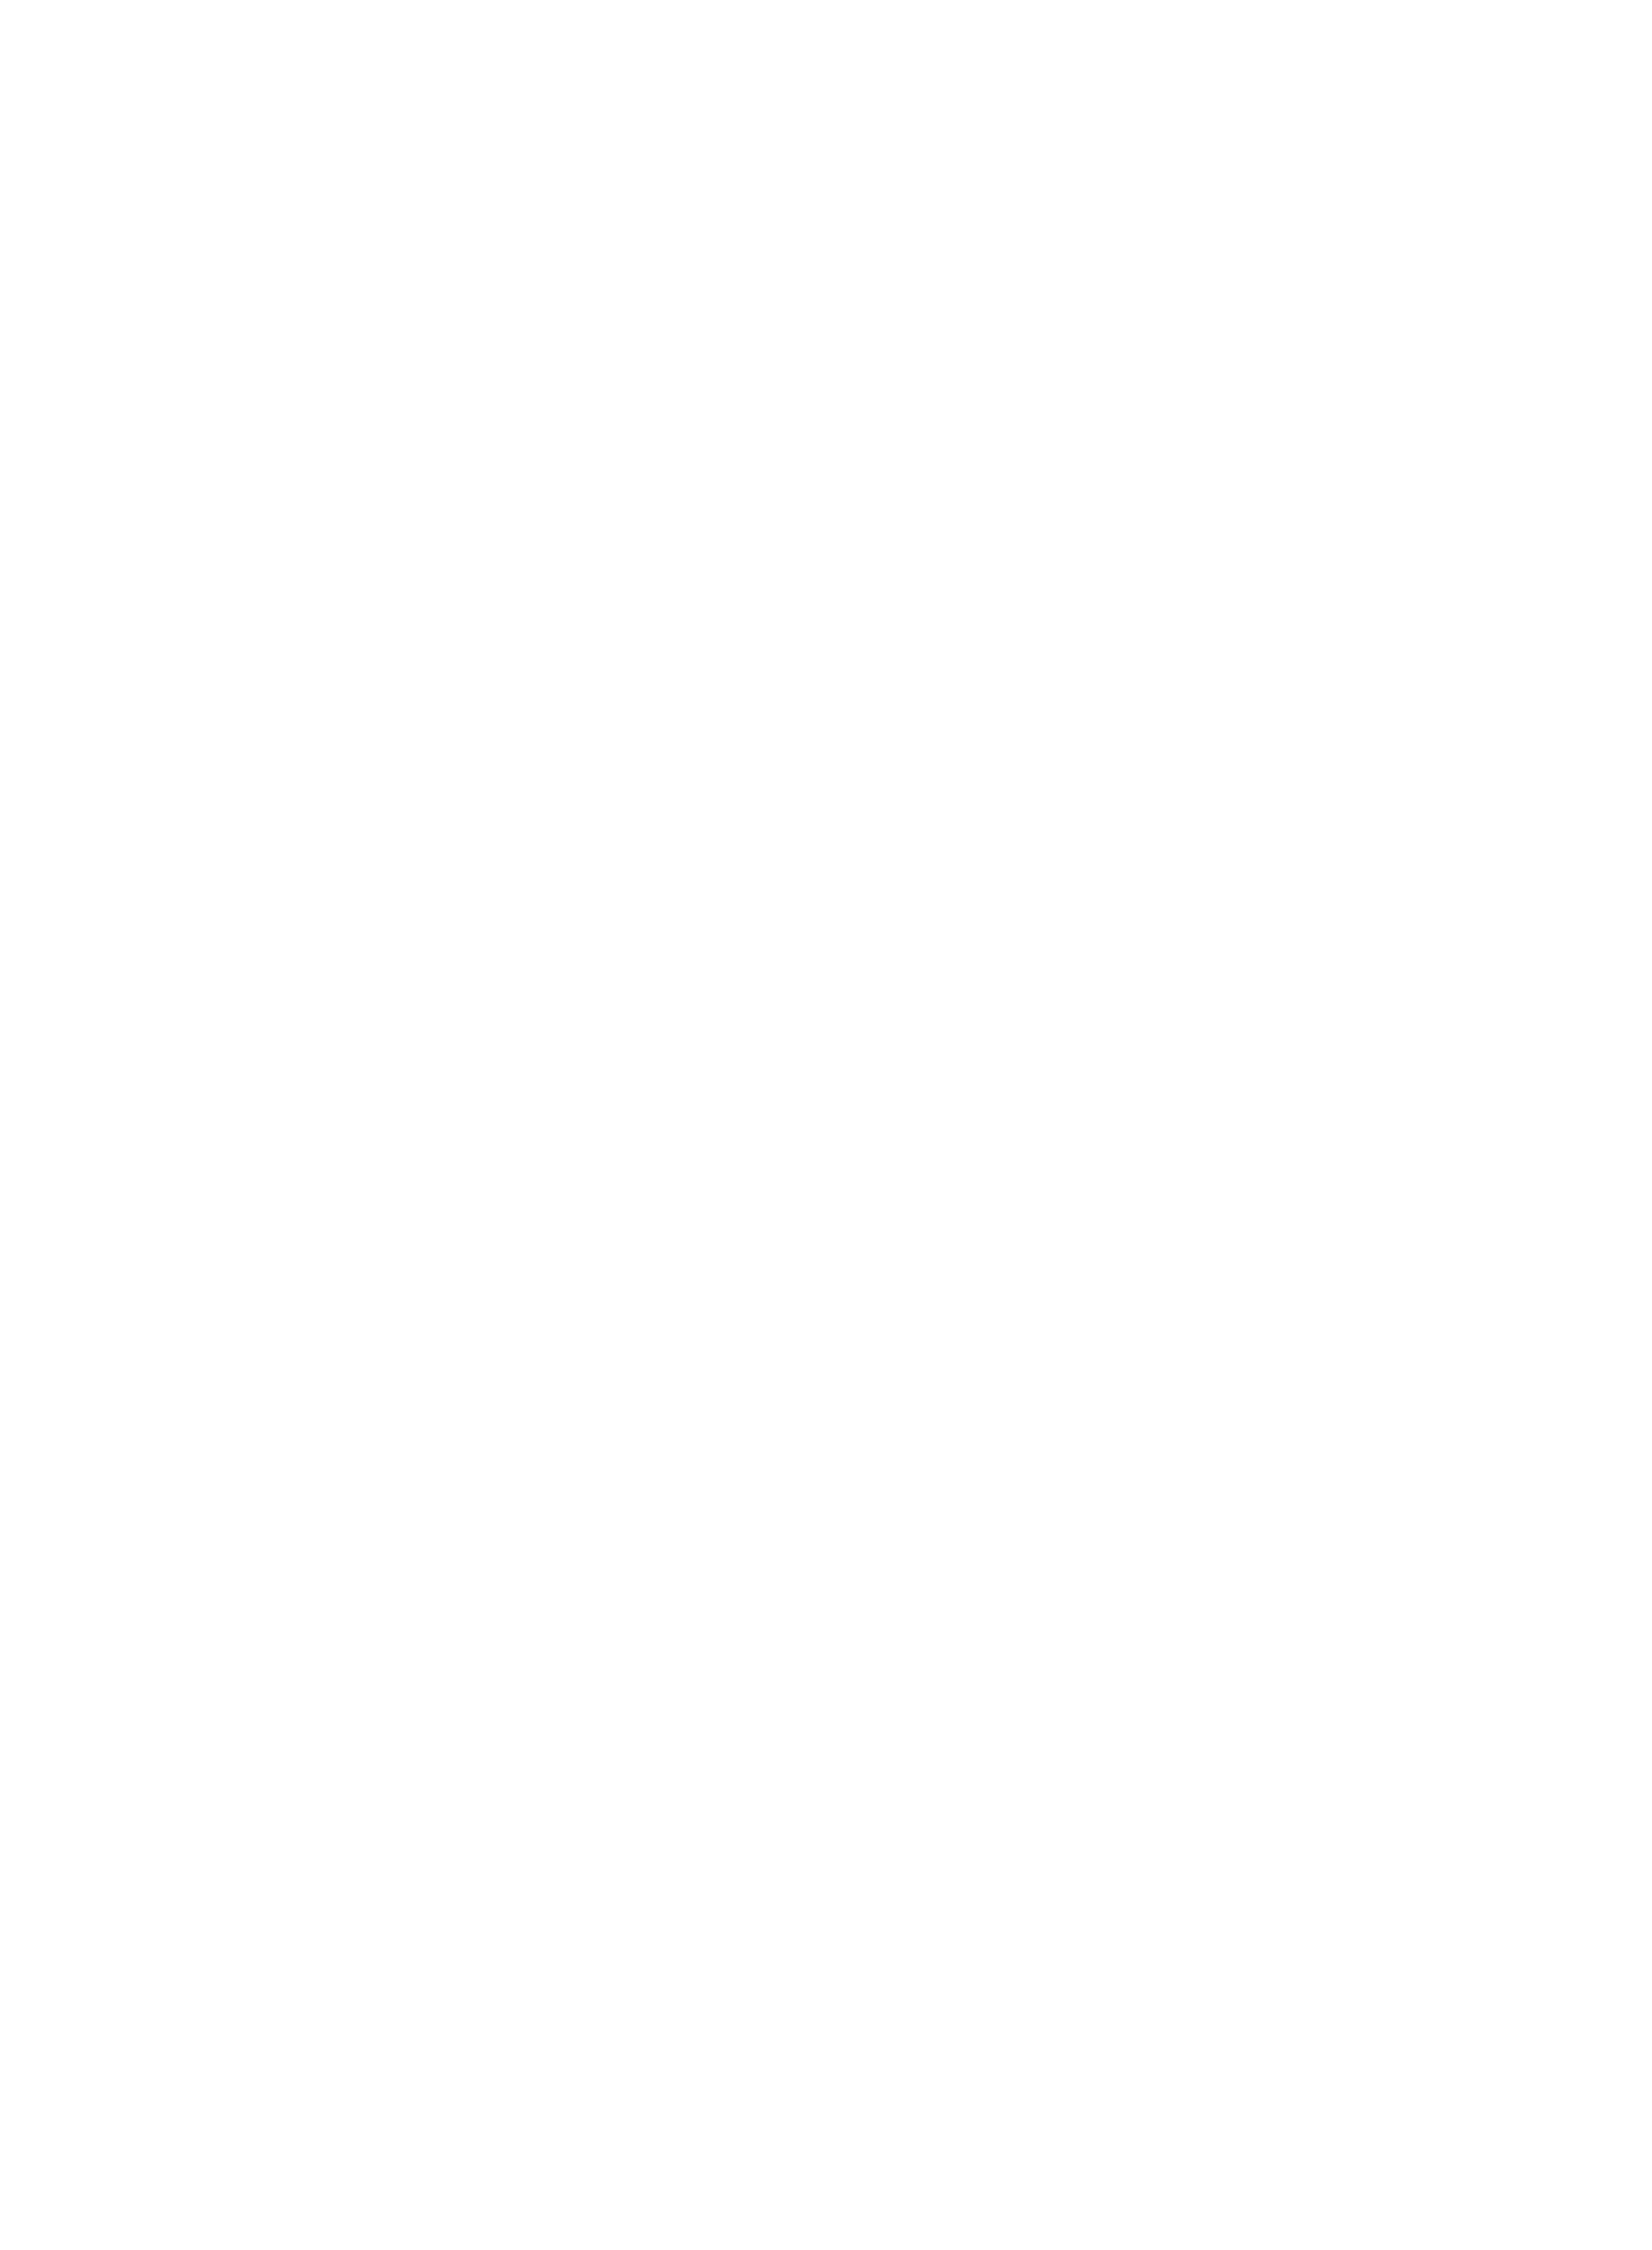 Correduría de SEGUROS PBC